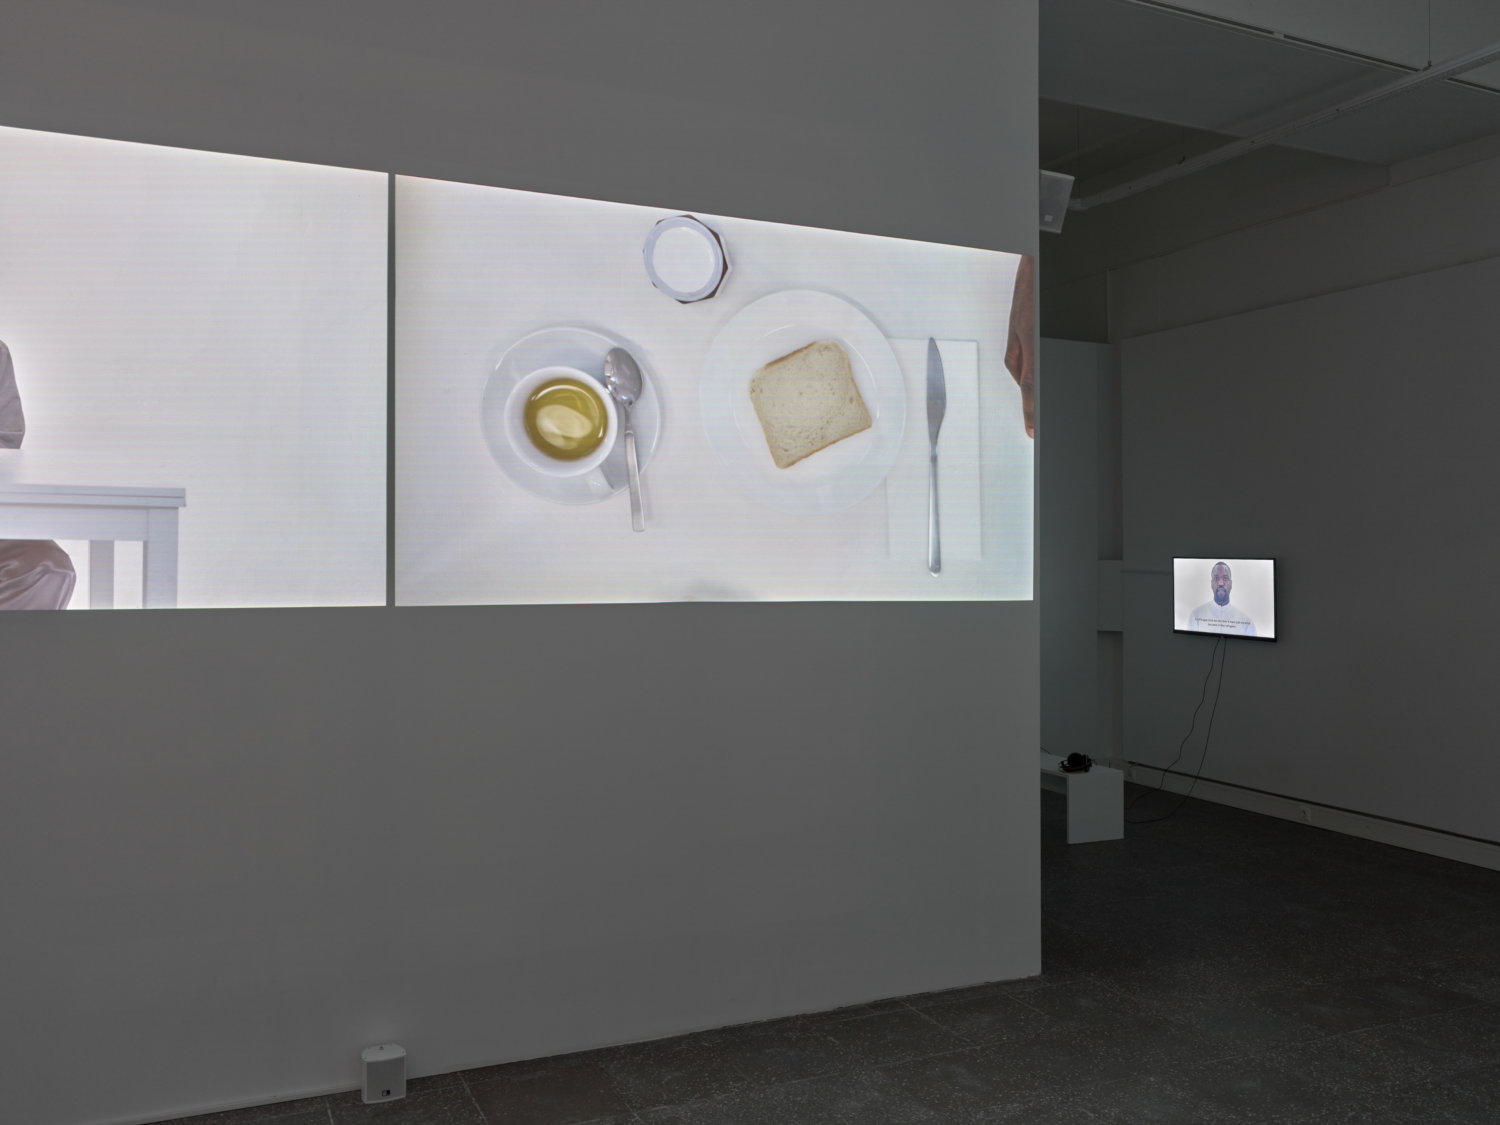 Ausstellungsansicht in der Galerie im Turm, zu sehen sind verschiedene Videoarbeiten und weiße Ausstellungswände, im Vordergrund ist ein Toast auf einem weißen Teller zu sehen, daneben ein Messer und eine Tasse Tee mit Löffel